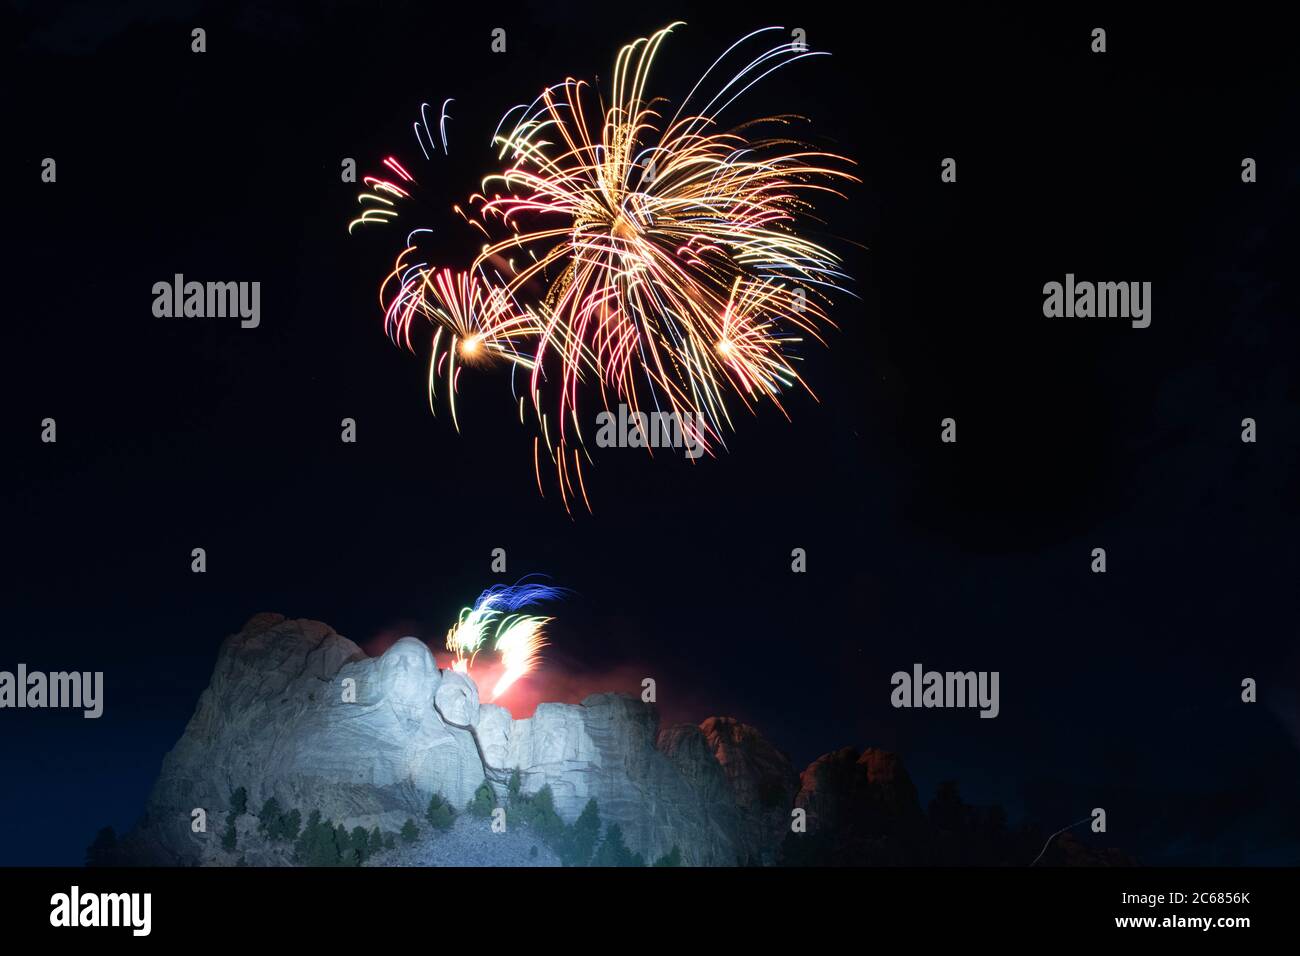 Fuochi d'artificio esplodono sulle colossali facce scultoree del Mount Rushmore National Memorial durante il saluto all'America 3 luglio 2020 a Keystone, South Dakota. Foto Stock